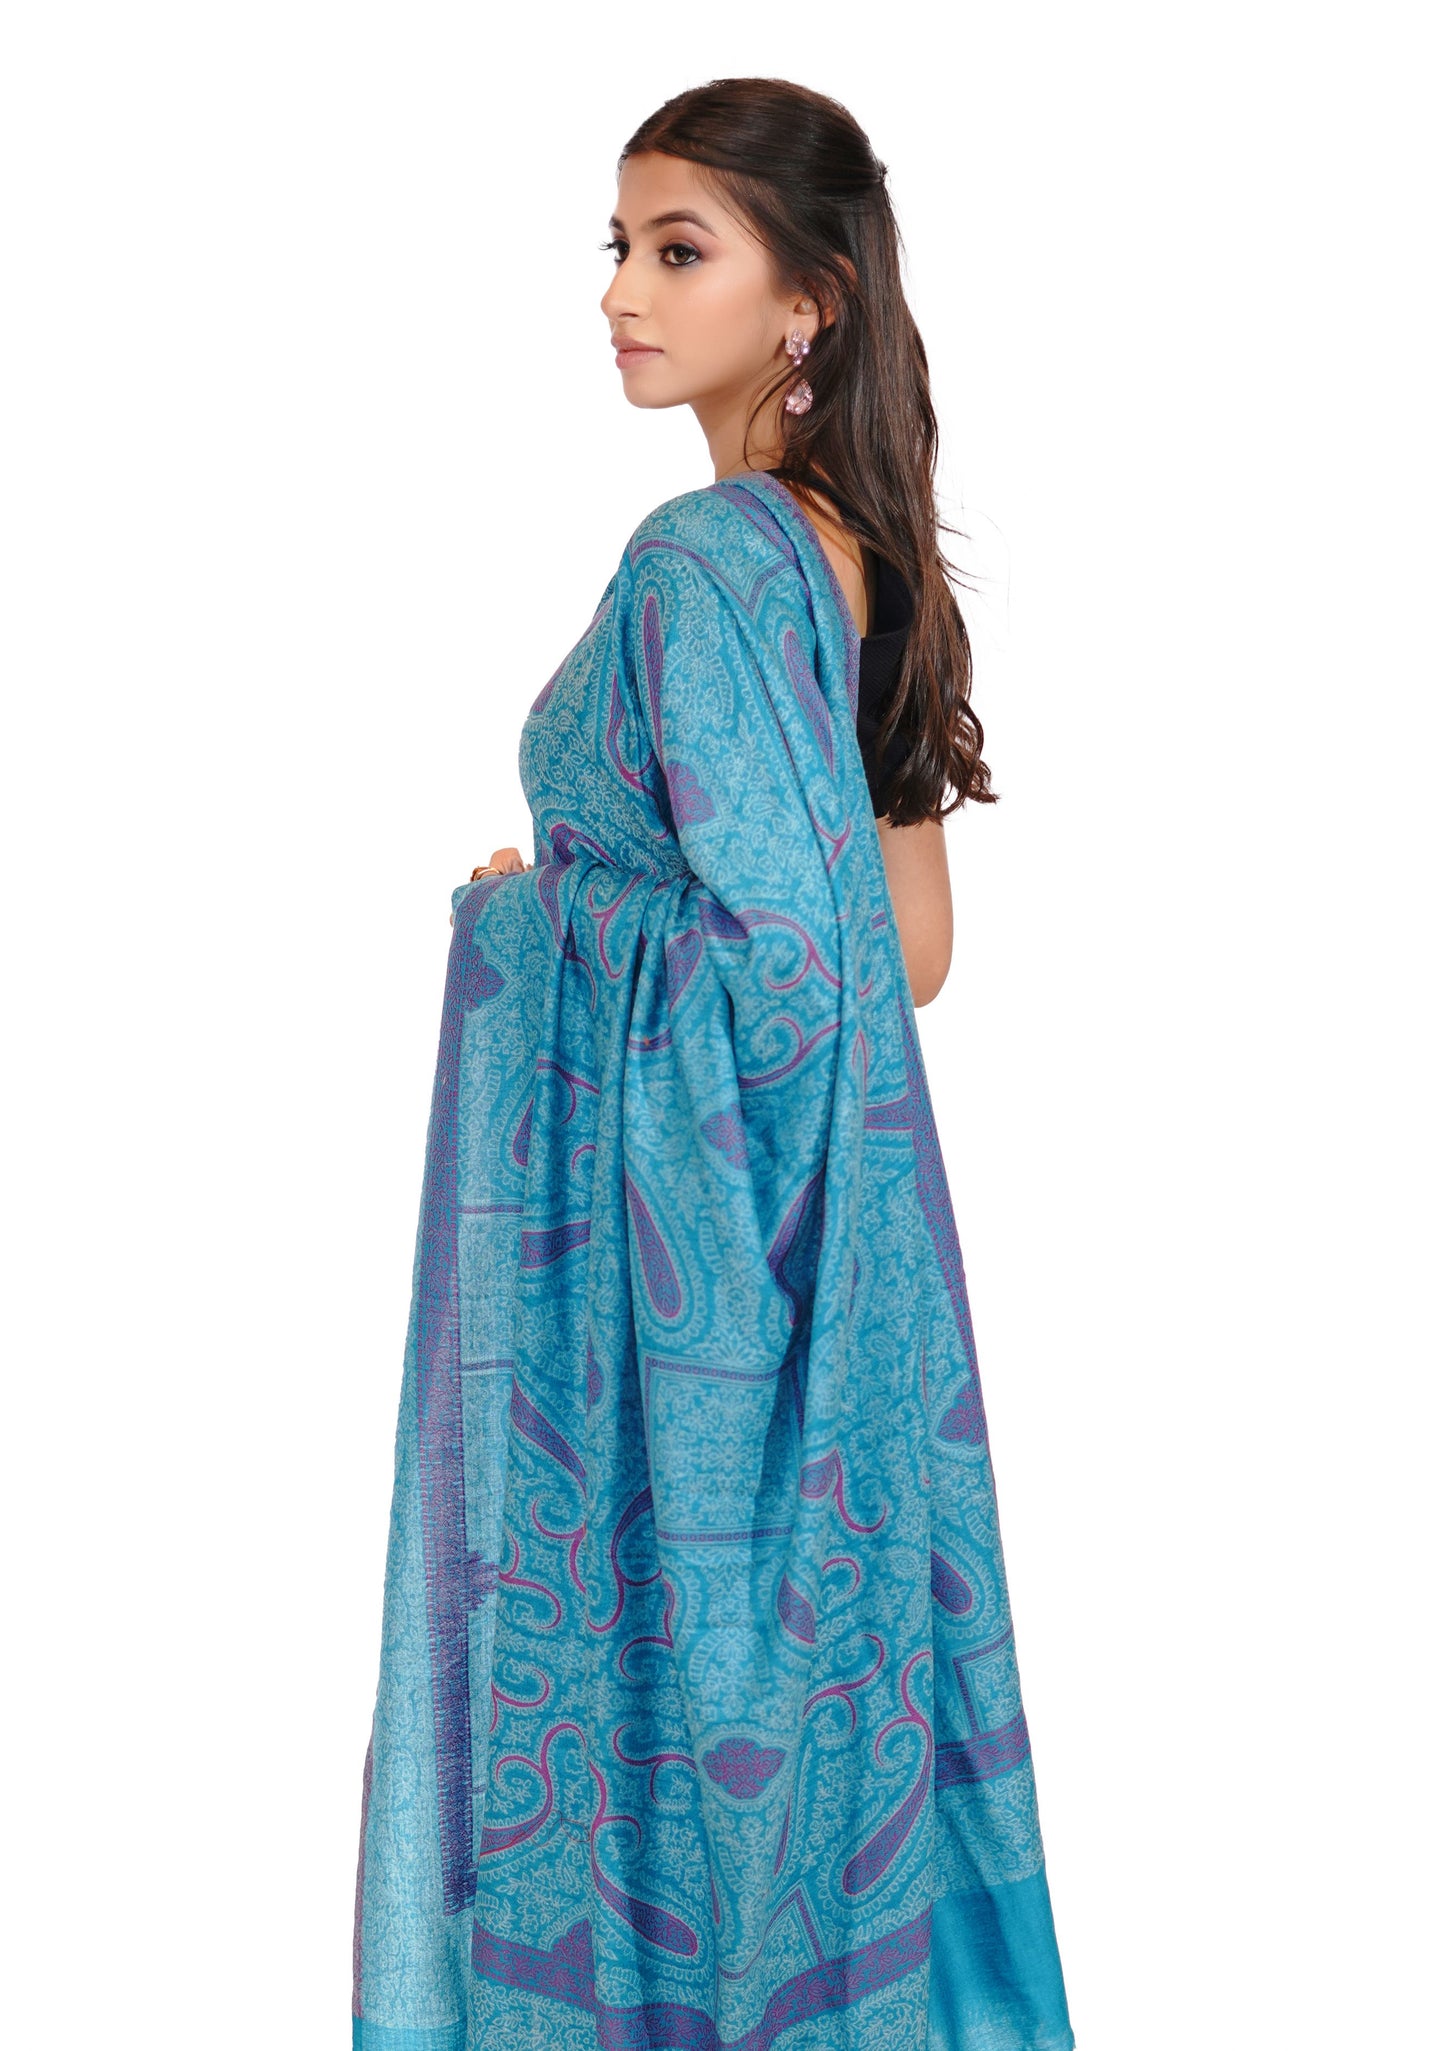 Women's Traditional Ethnic Weave Woollen Shawl - Breezy Blue